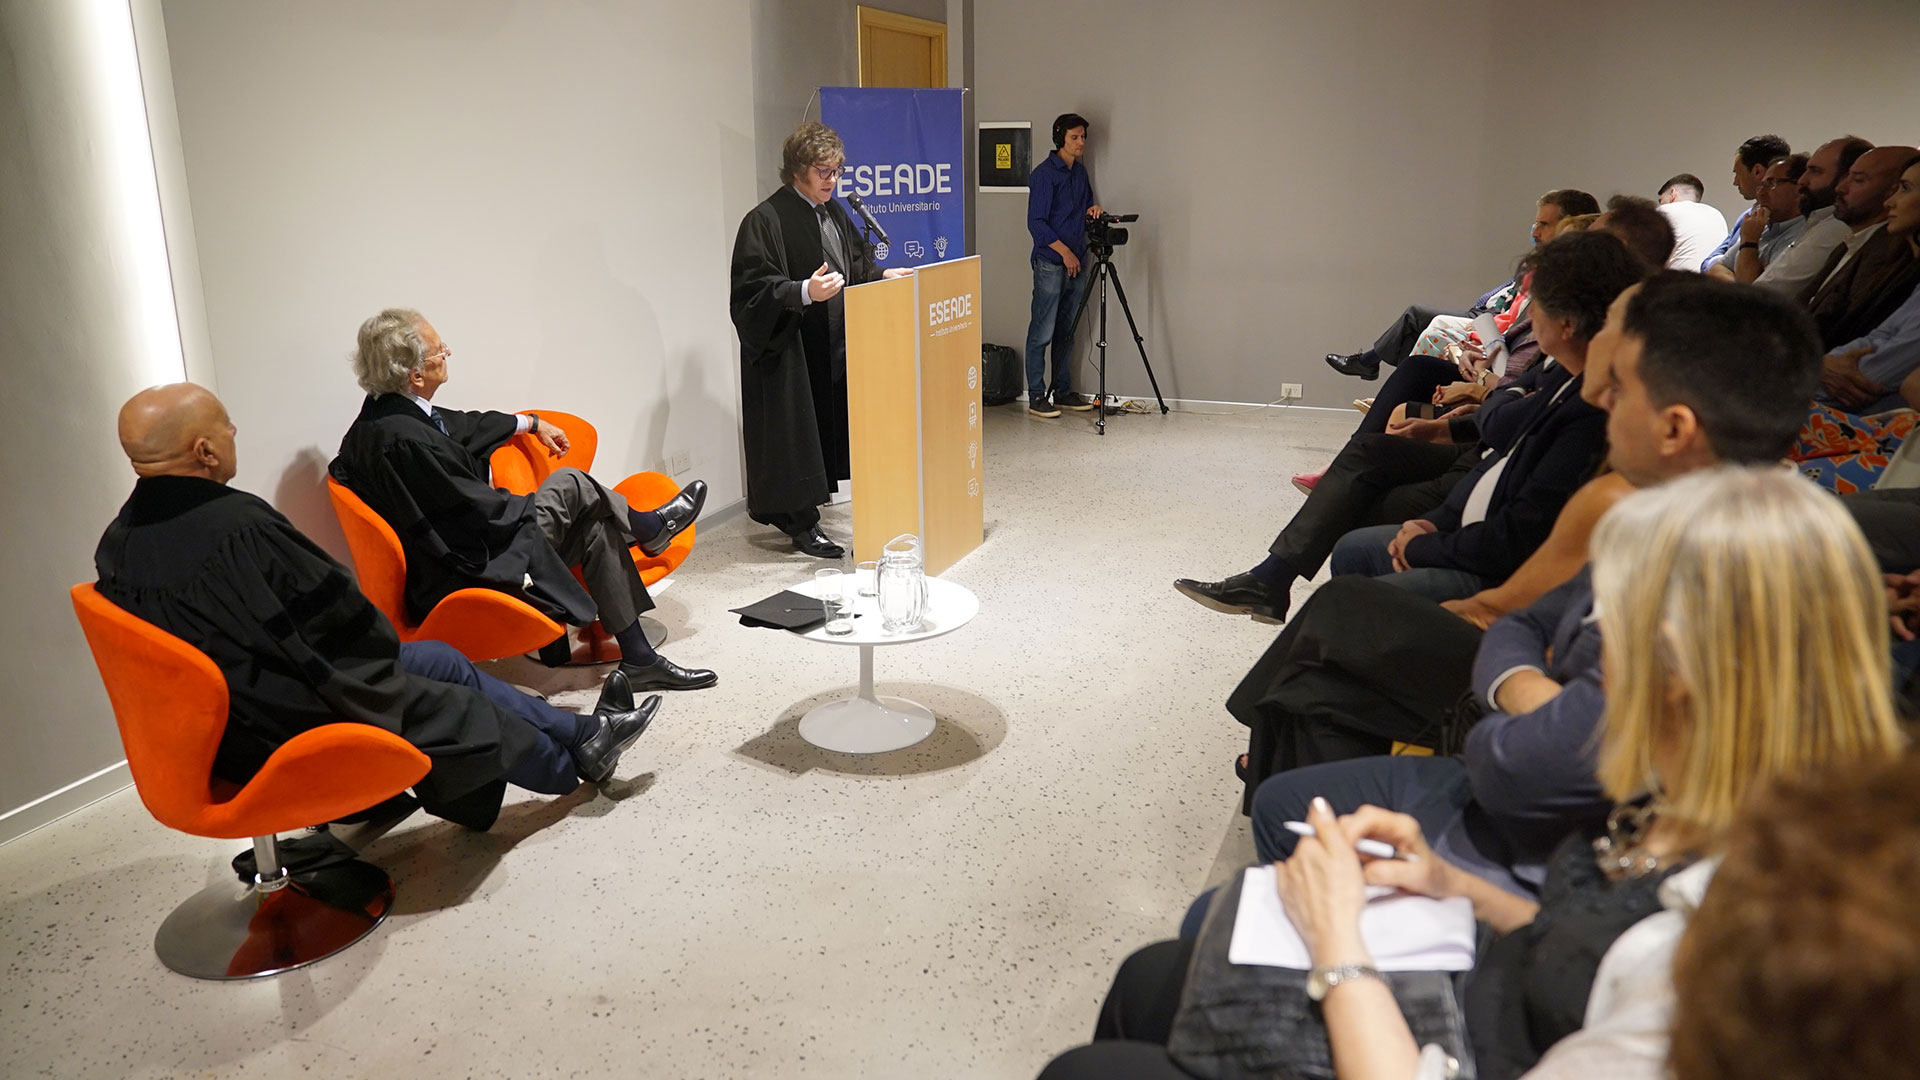 Milei presentó su ponencia después de un discurso del filósofo Alberto Benegas Lynch. (foto Alejandro Beltrame)